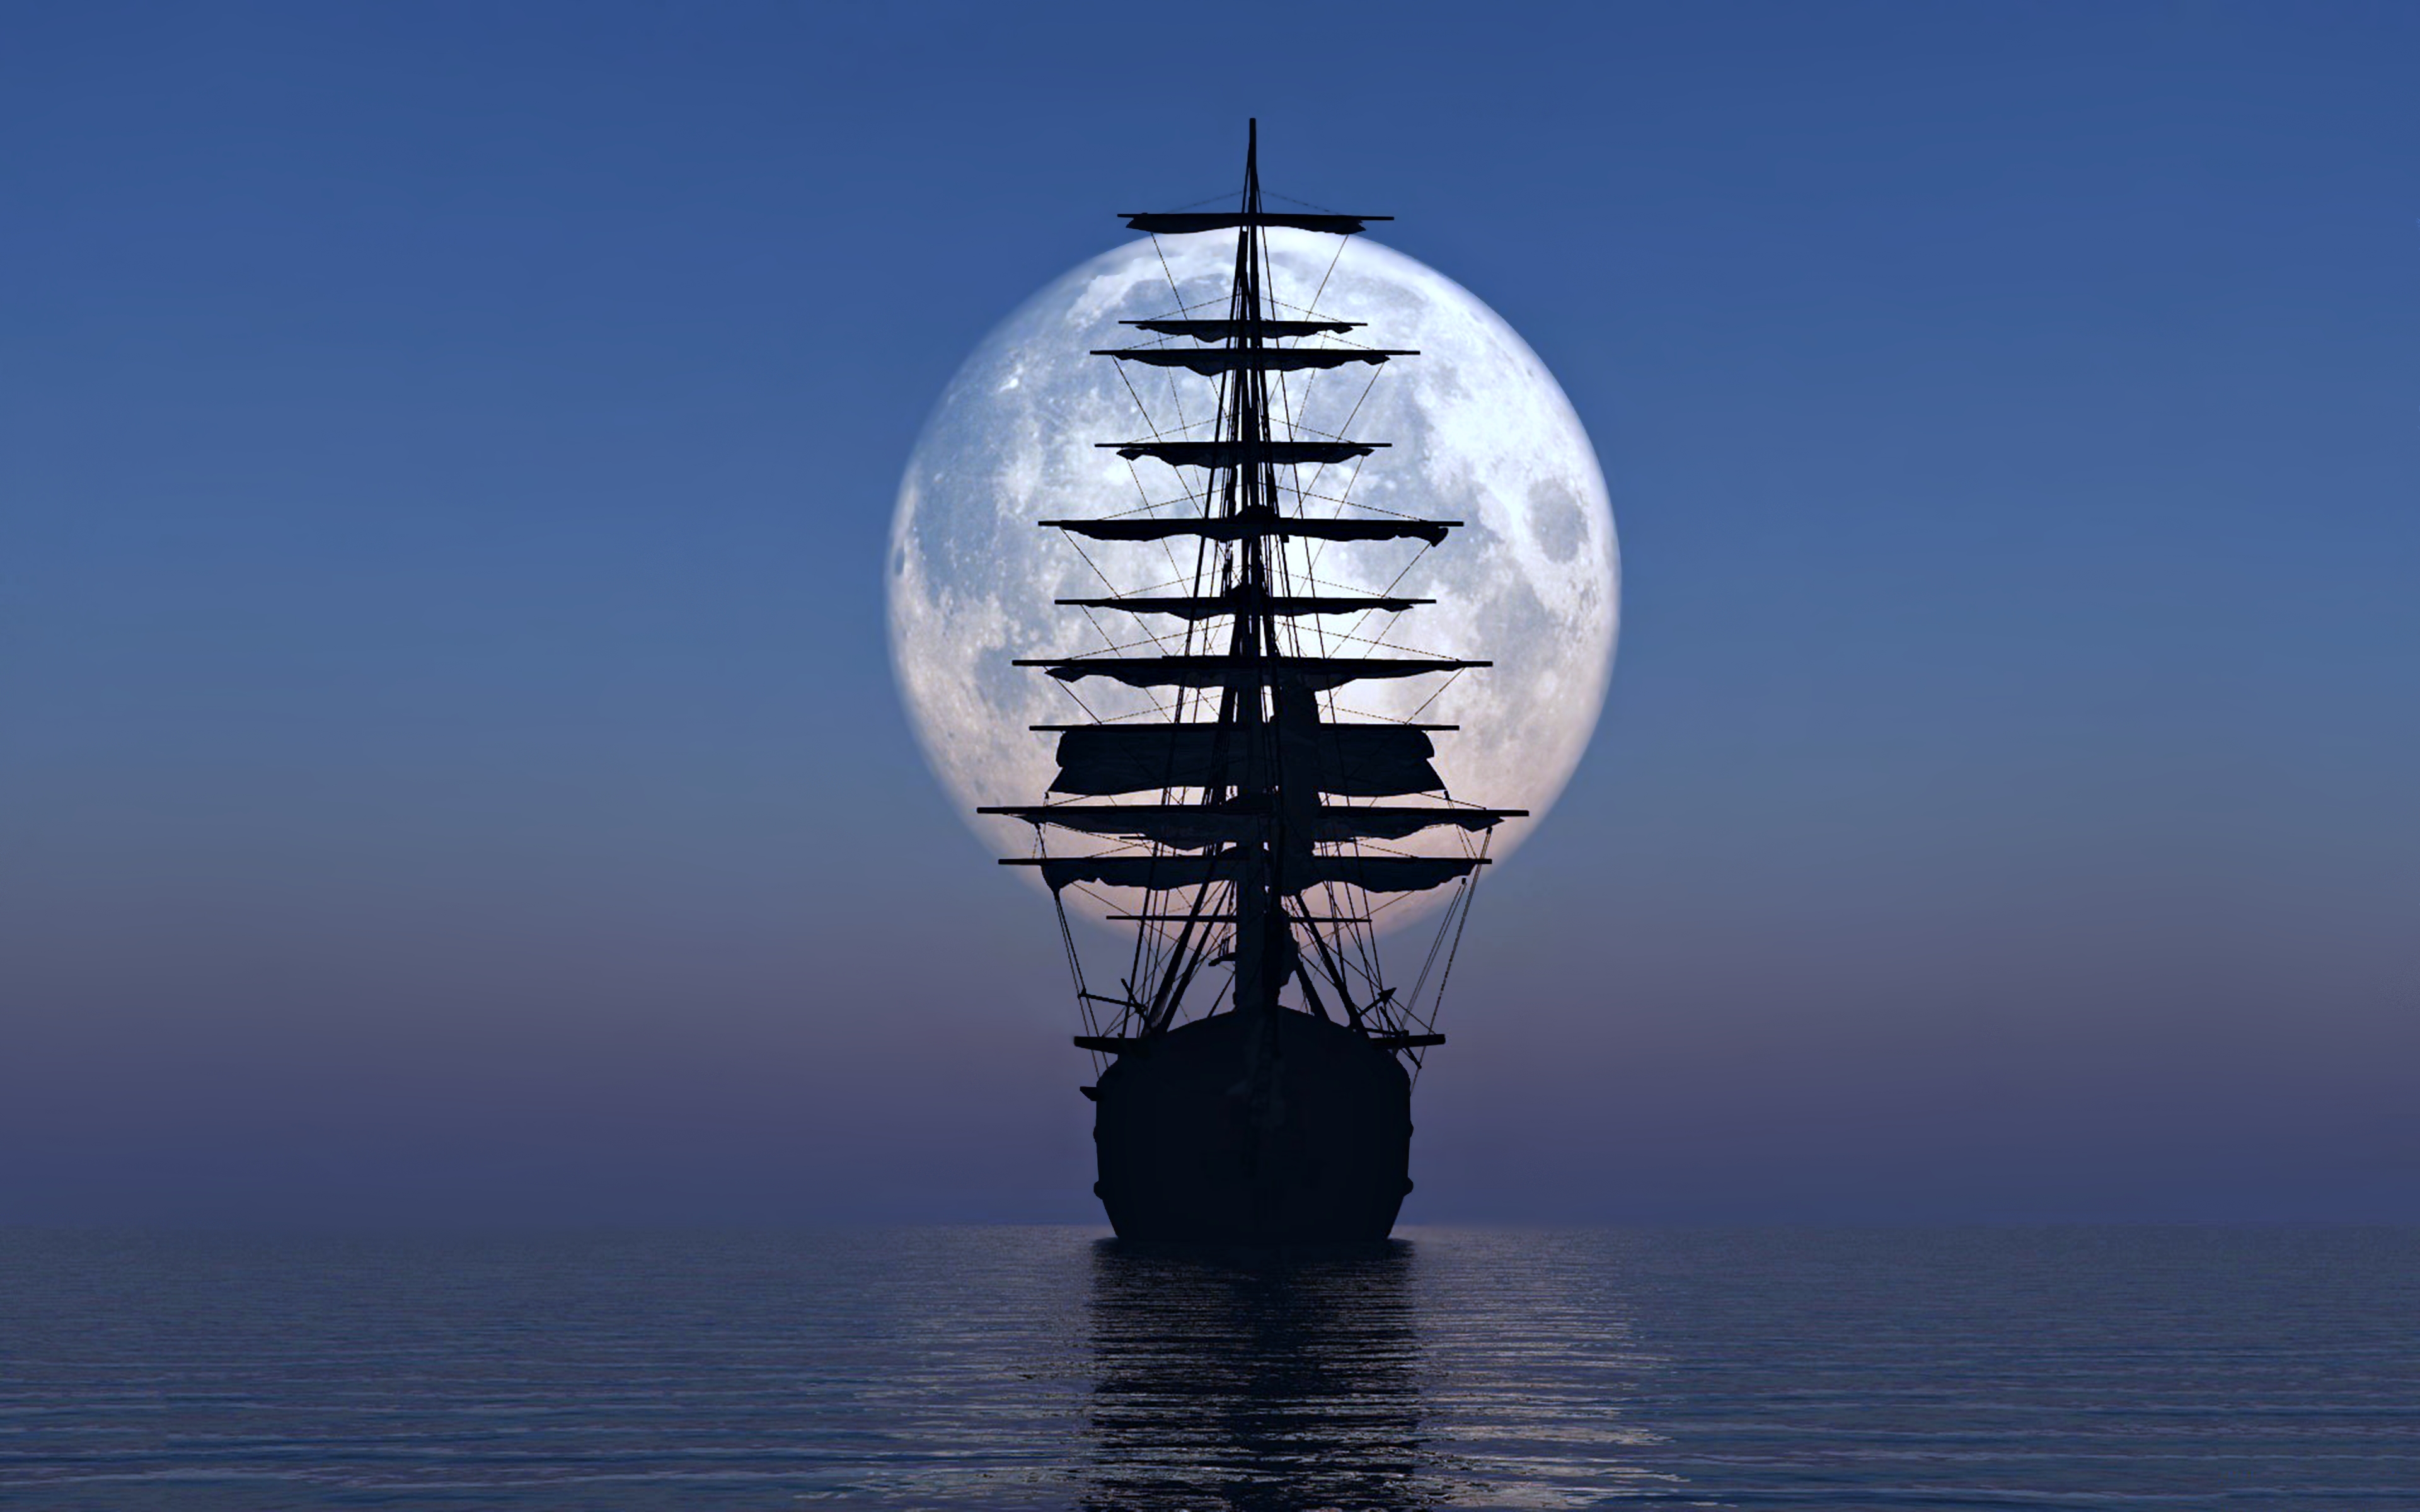 Phía sau thuyền là ánh trăng